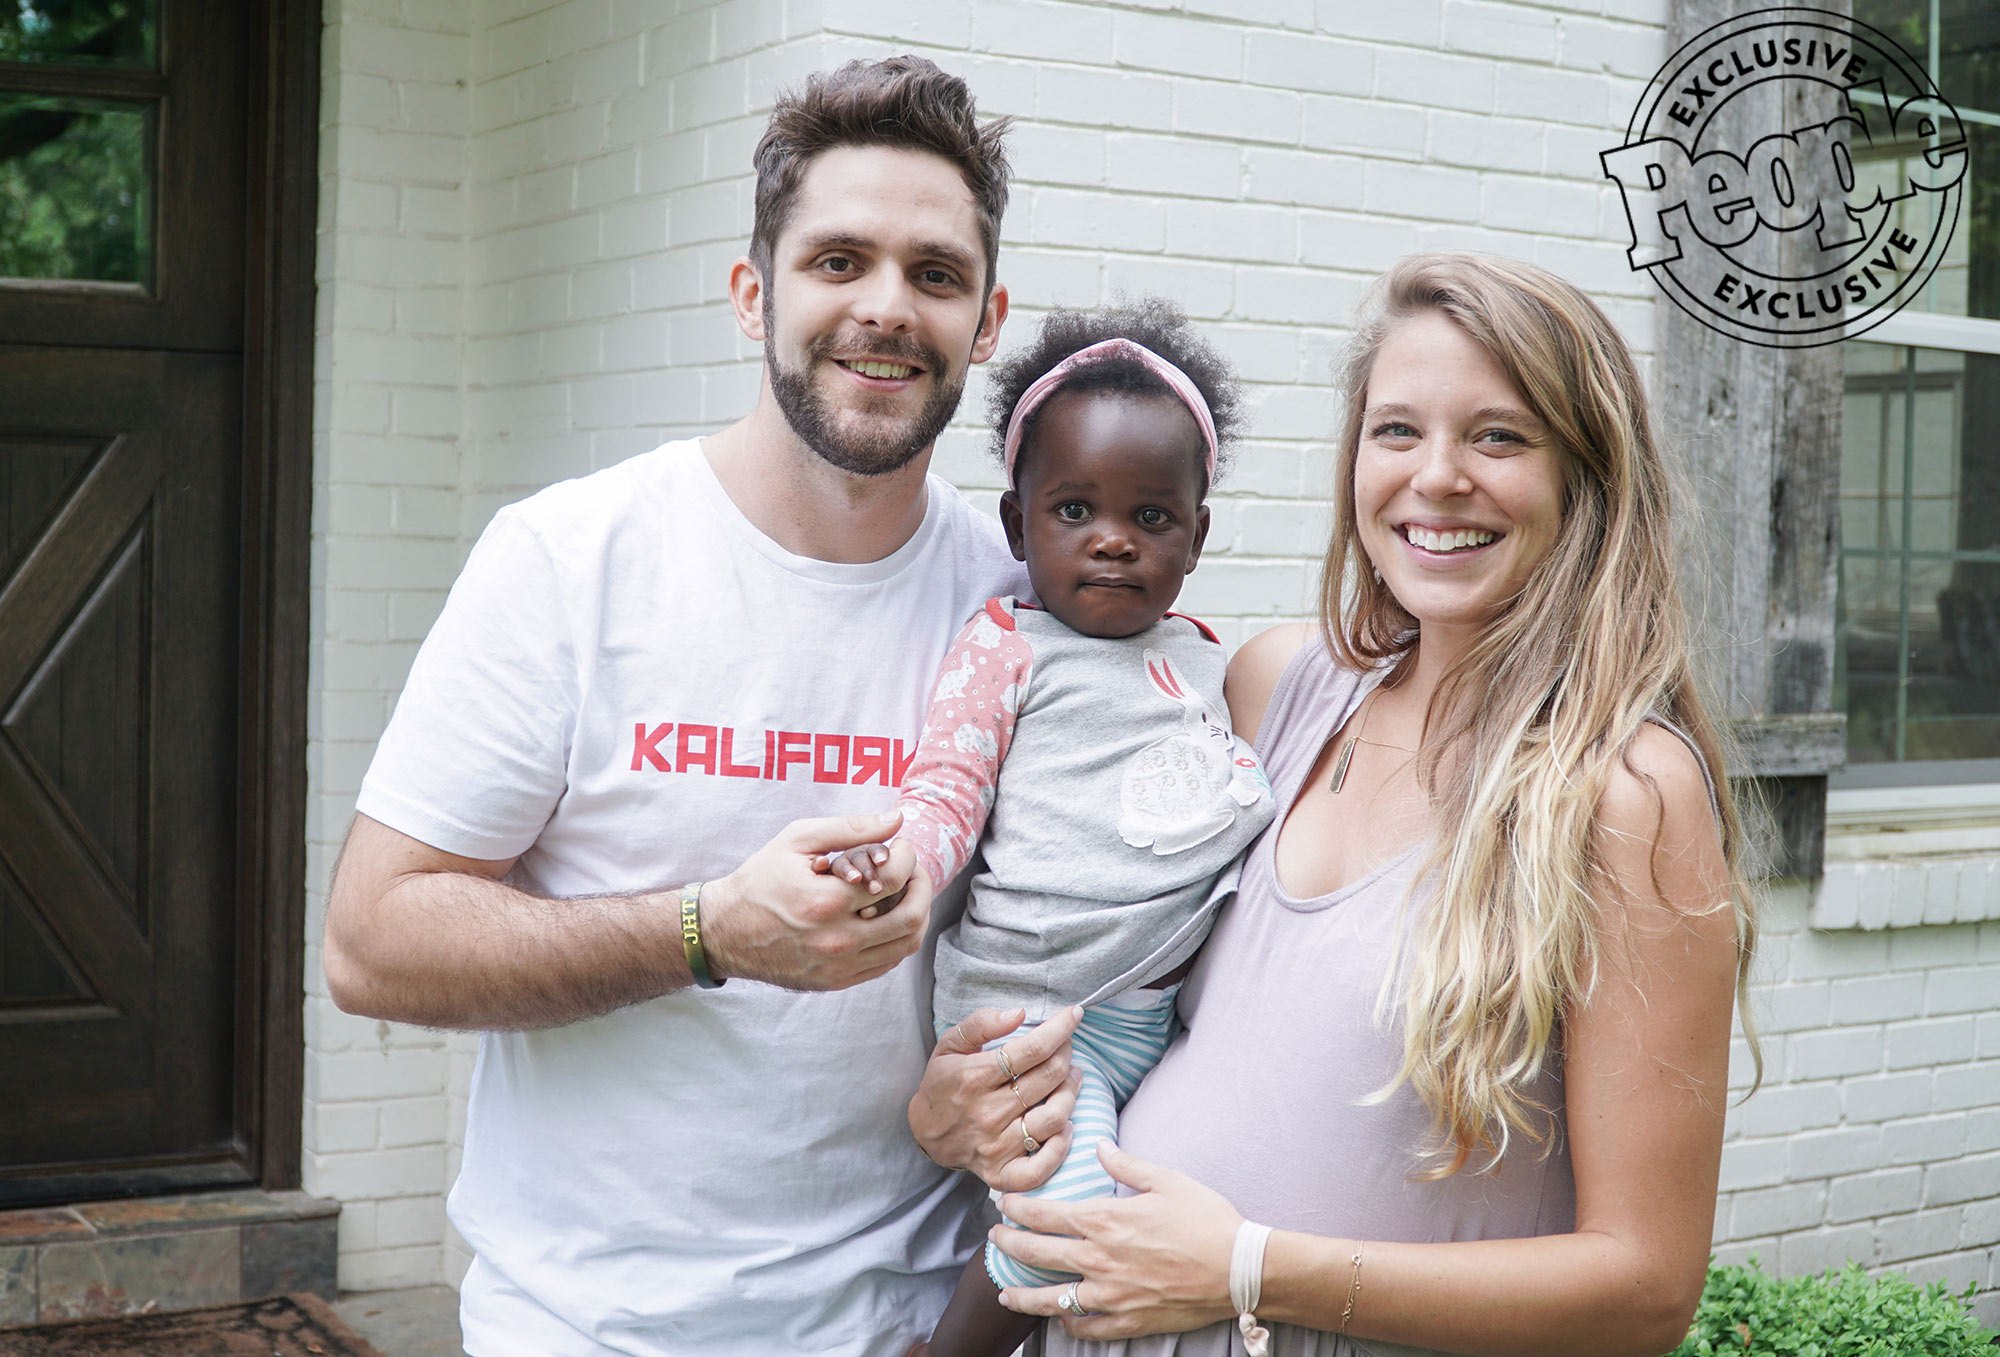 Thomas Rhett and wife Lauren adopt baby girl.